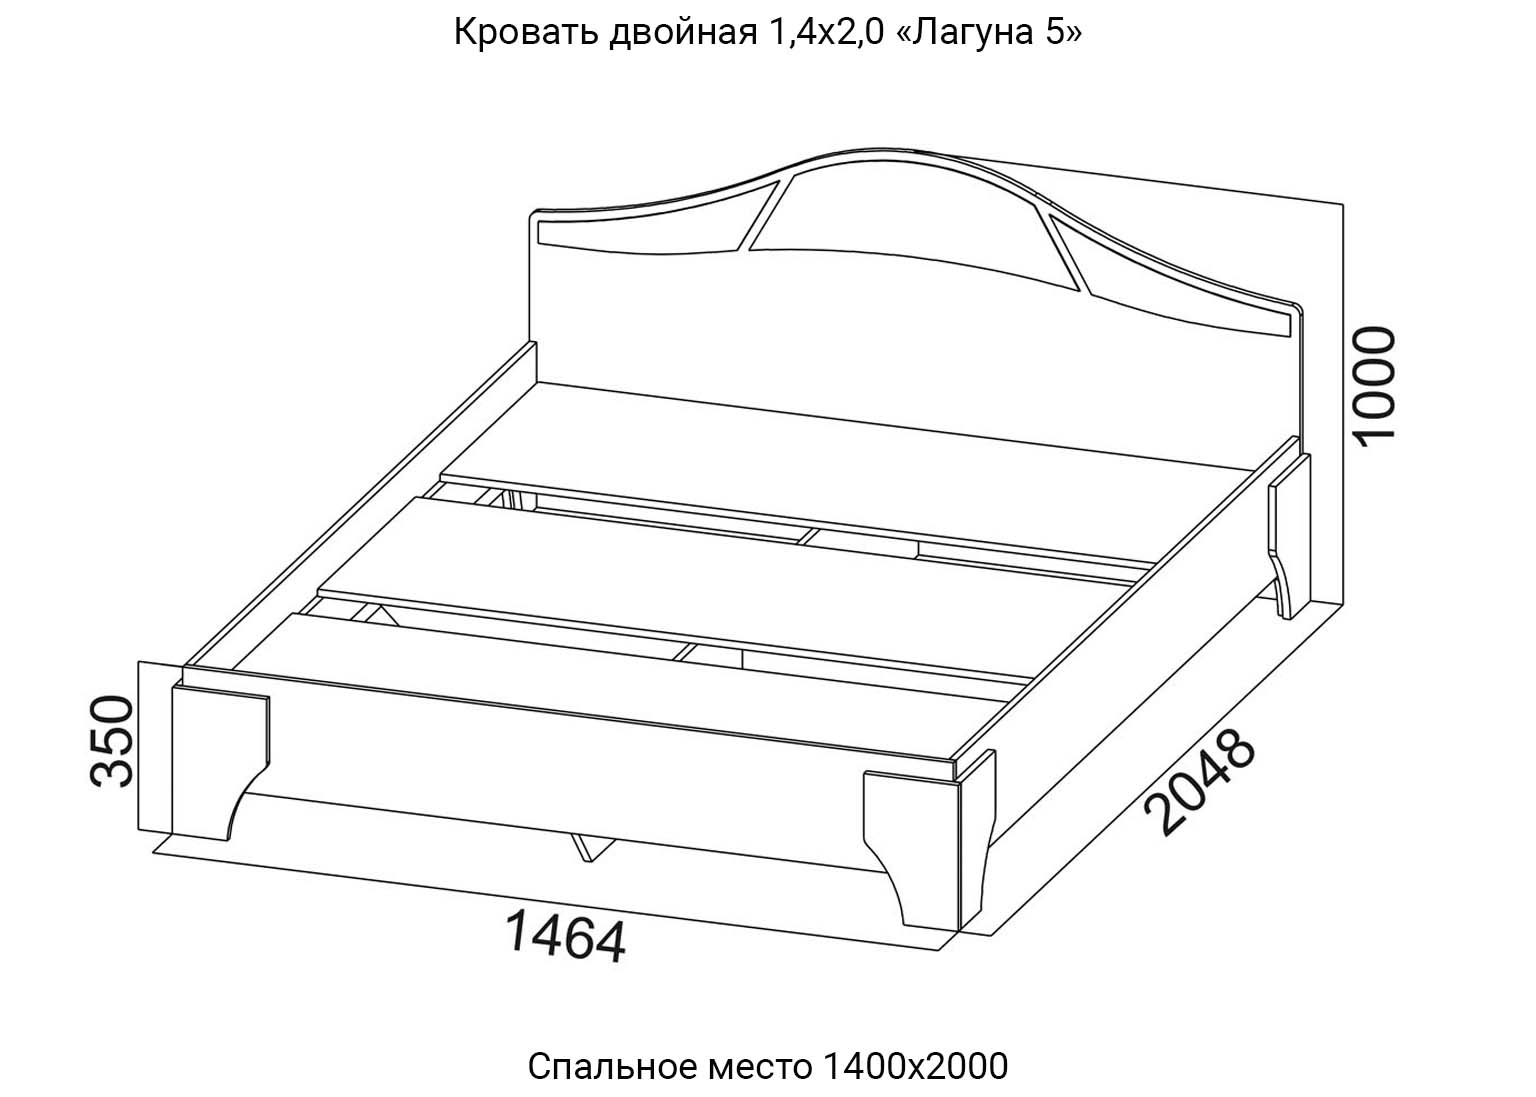 Спальня Лагуна 5 Кровать двойная 1,4х2,0 схема SV-Мебель